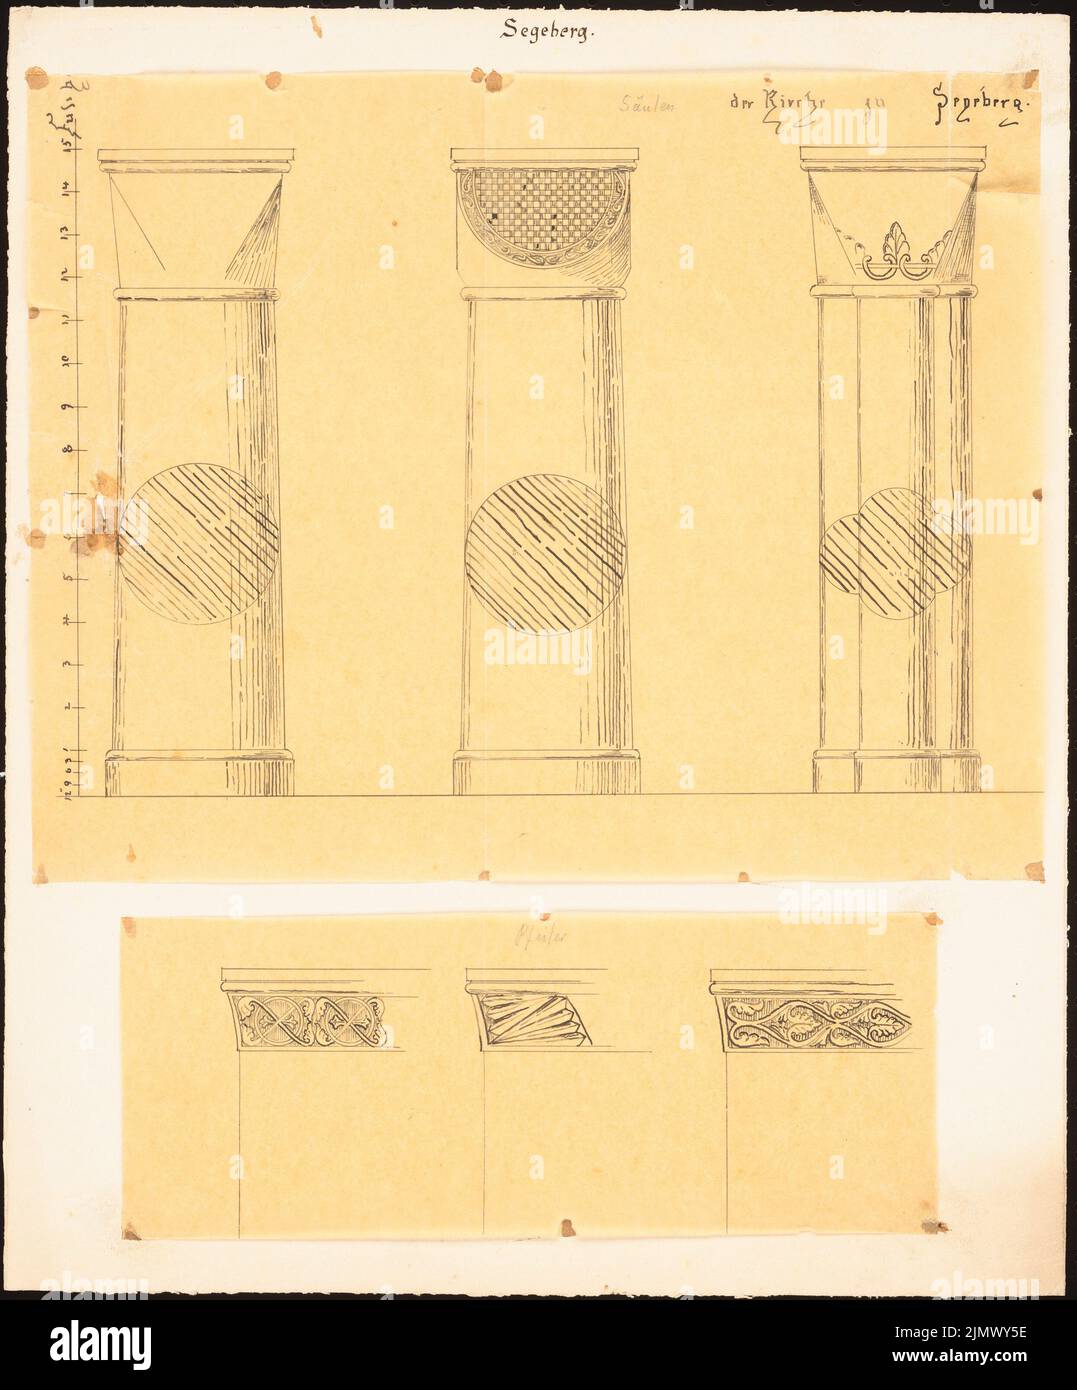 Quast Ferdinand von (1807-1877), Chiesa di Segeberg (senza dat.): Due foglie: Alberi risuscitanti e capitelli di tre colonne, fregio a tre colonne con ornamento vegetale, barra di scala (piede di cembro.). Inchiostro su trasparente, 35,4 x 29,3 cm (compresi i bordi di scansione) Quast Ferdinand von (1807-1877): Kirche, Segeberg Foto Stock